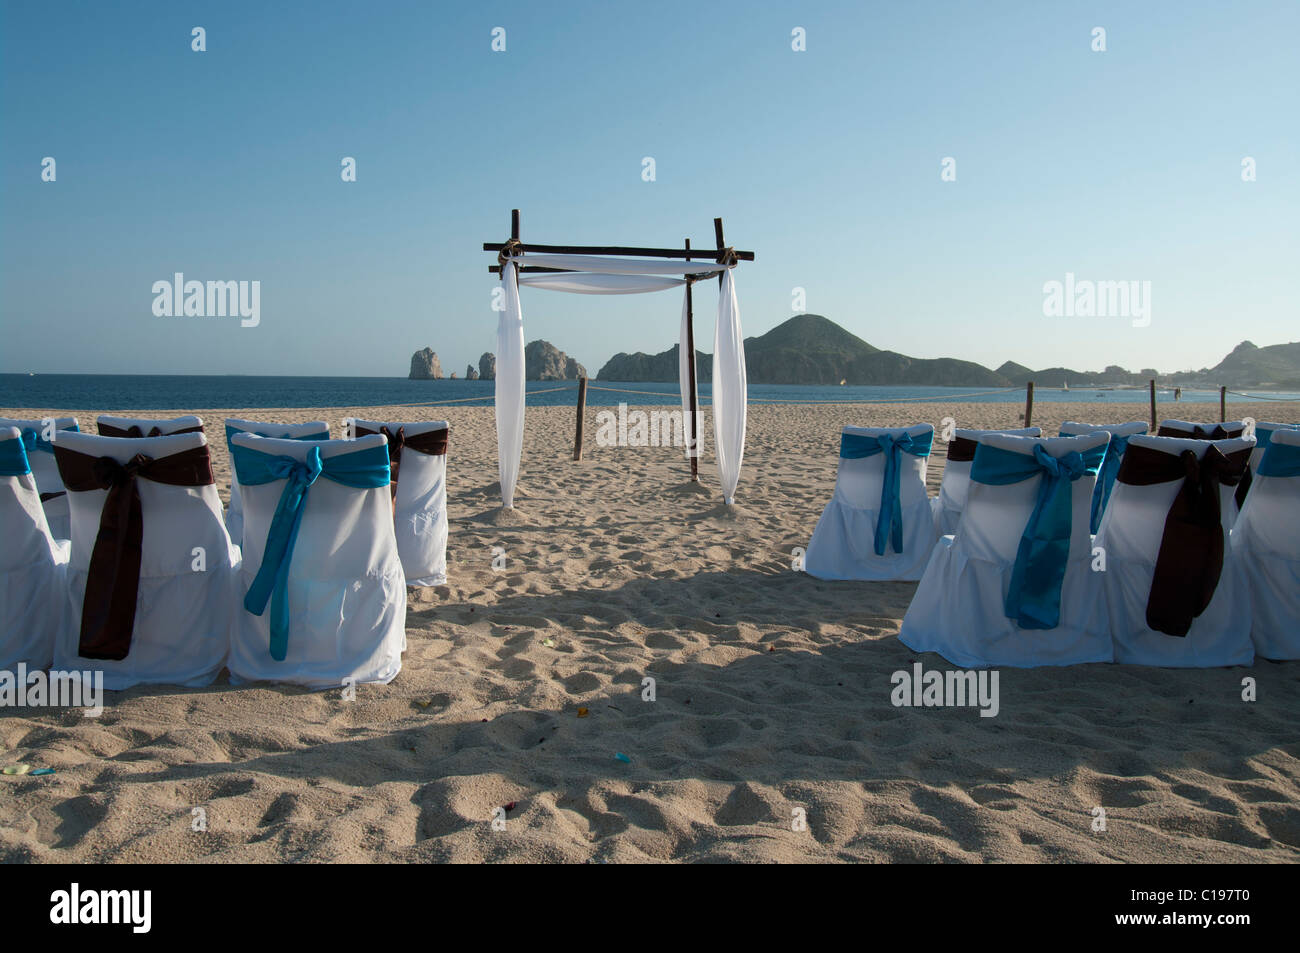 Ein verlassener Strand eingerichtet für eine Trauung.  Die Stuhlhussen sind weiß mit blauen und braunen Bögen. Ein Bogen erwartet das Paar. Stockfoto